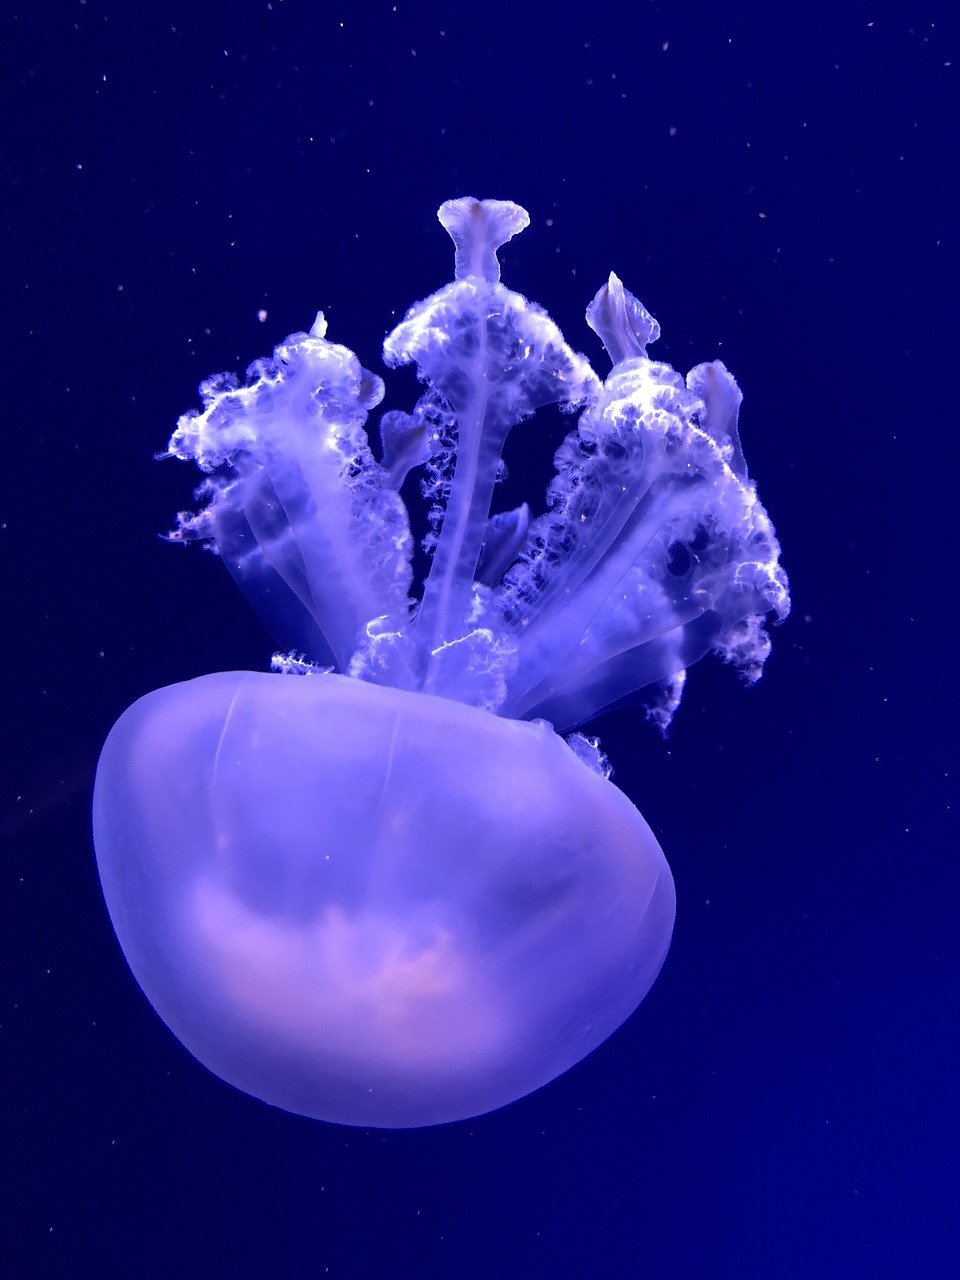 submerged medusa nature free photo